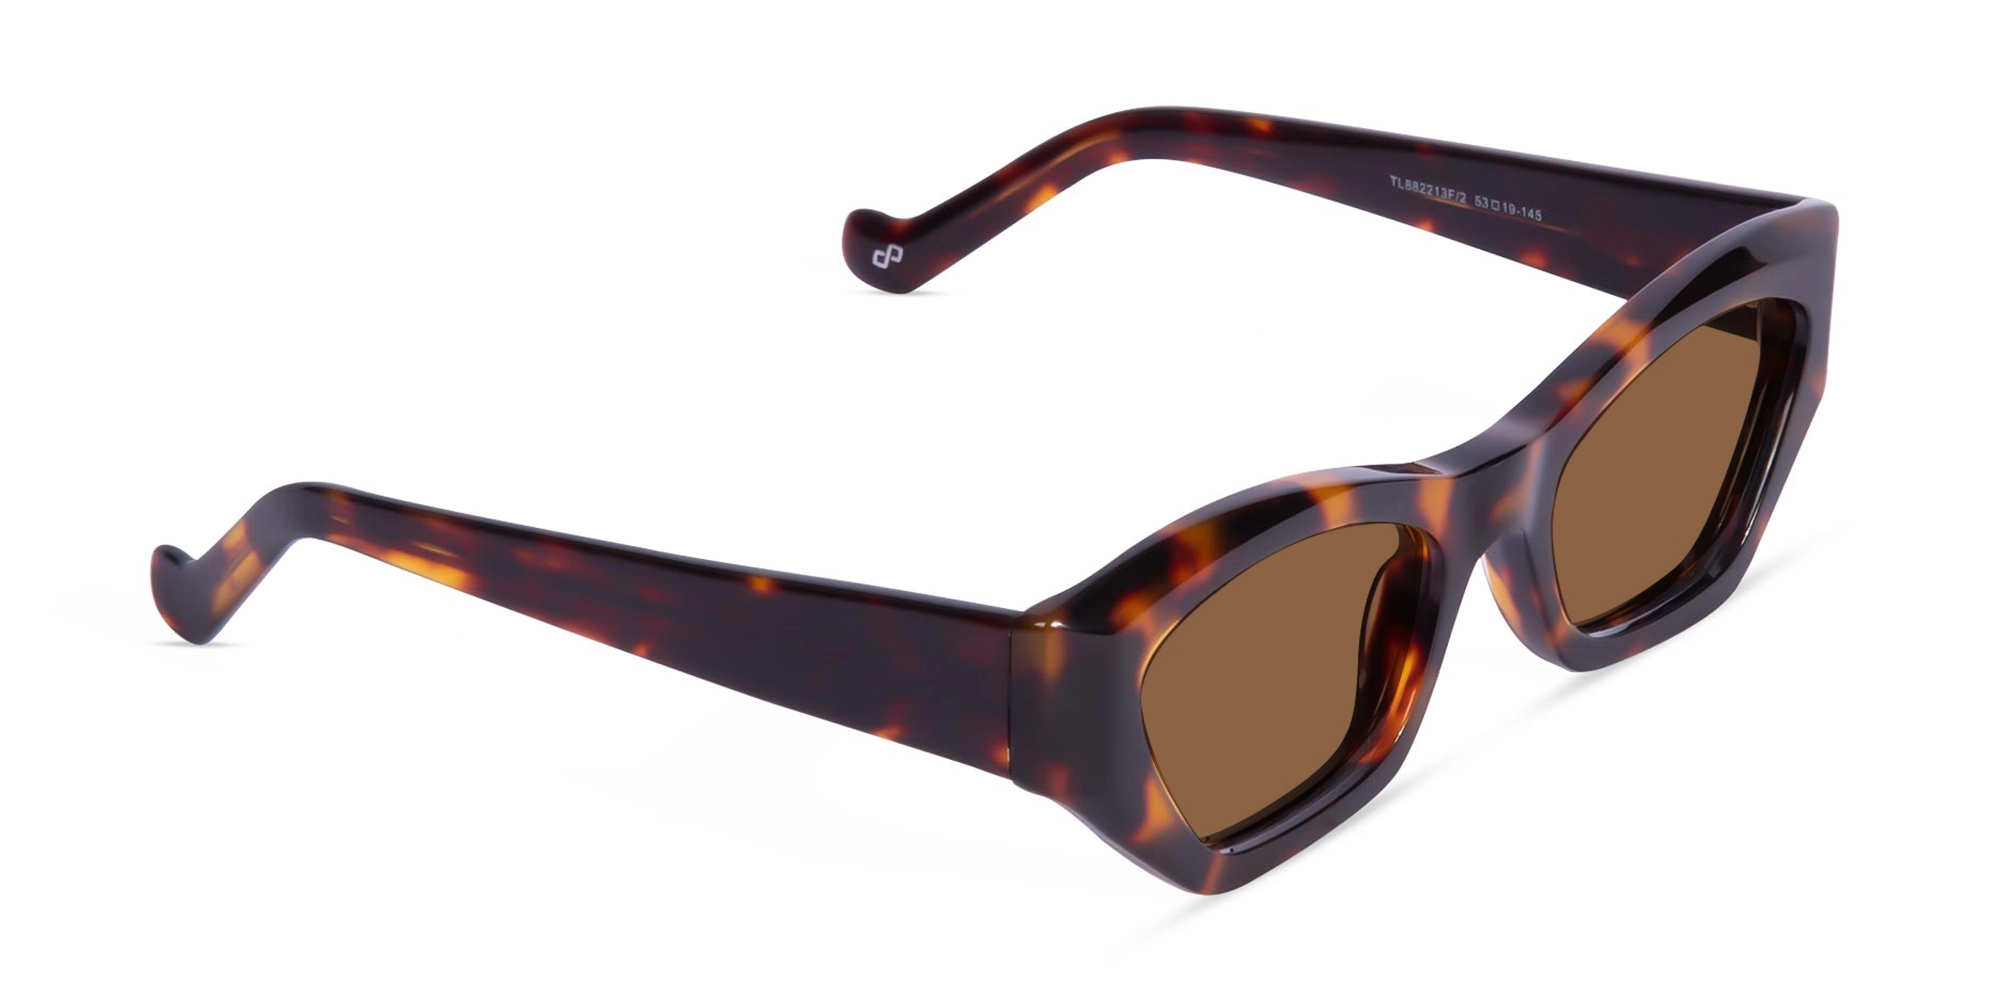 Tortoise Shell Sunglasses For Women-1